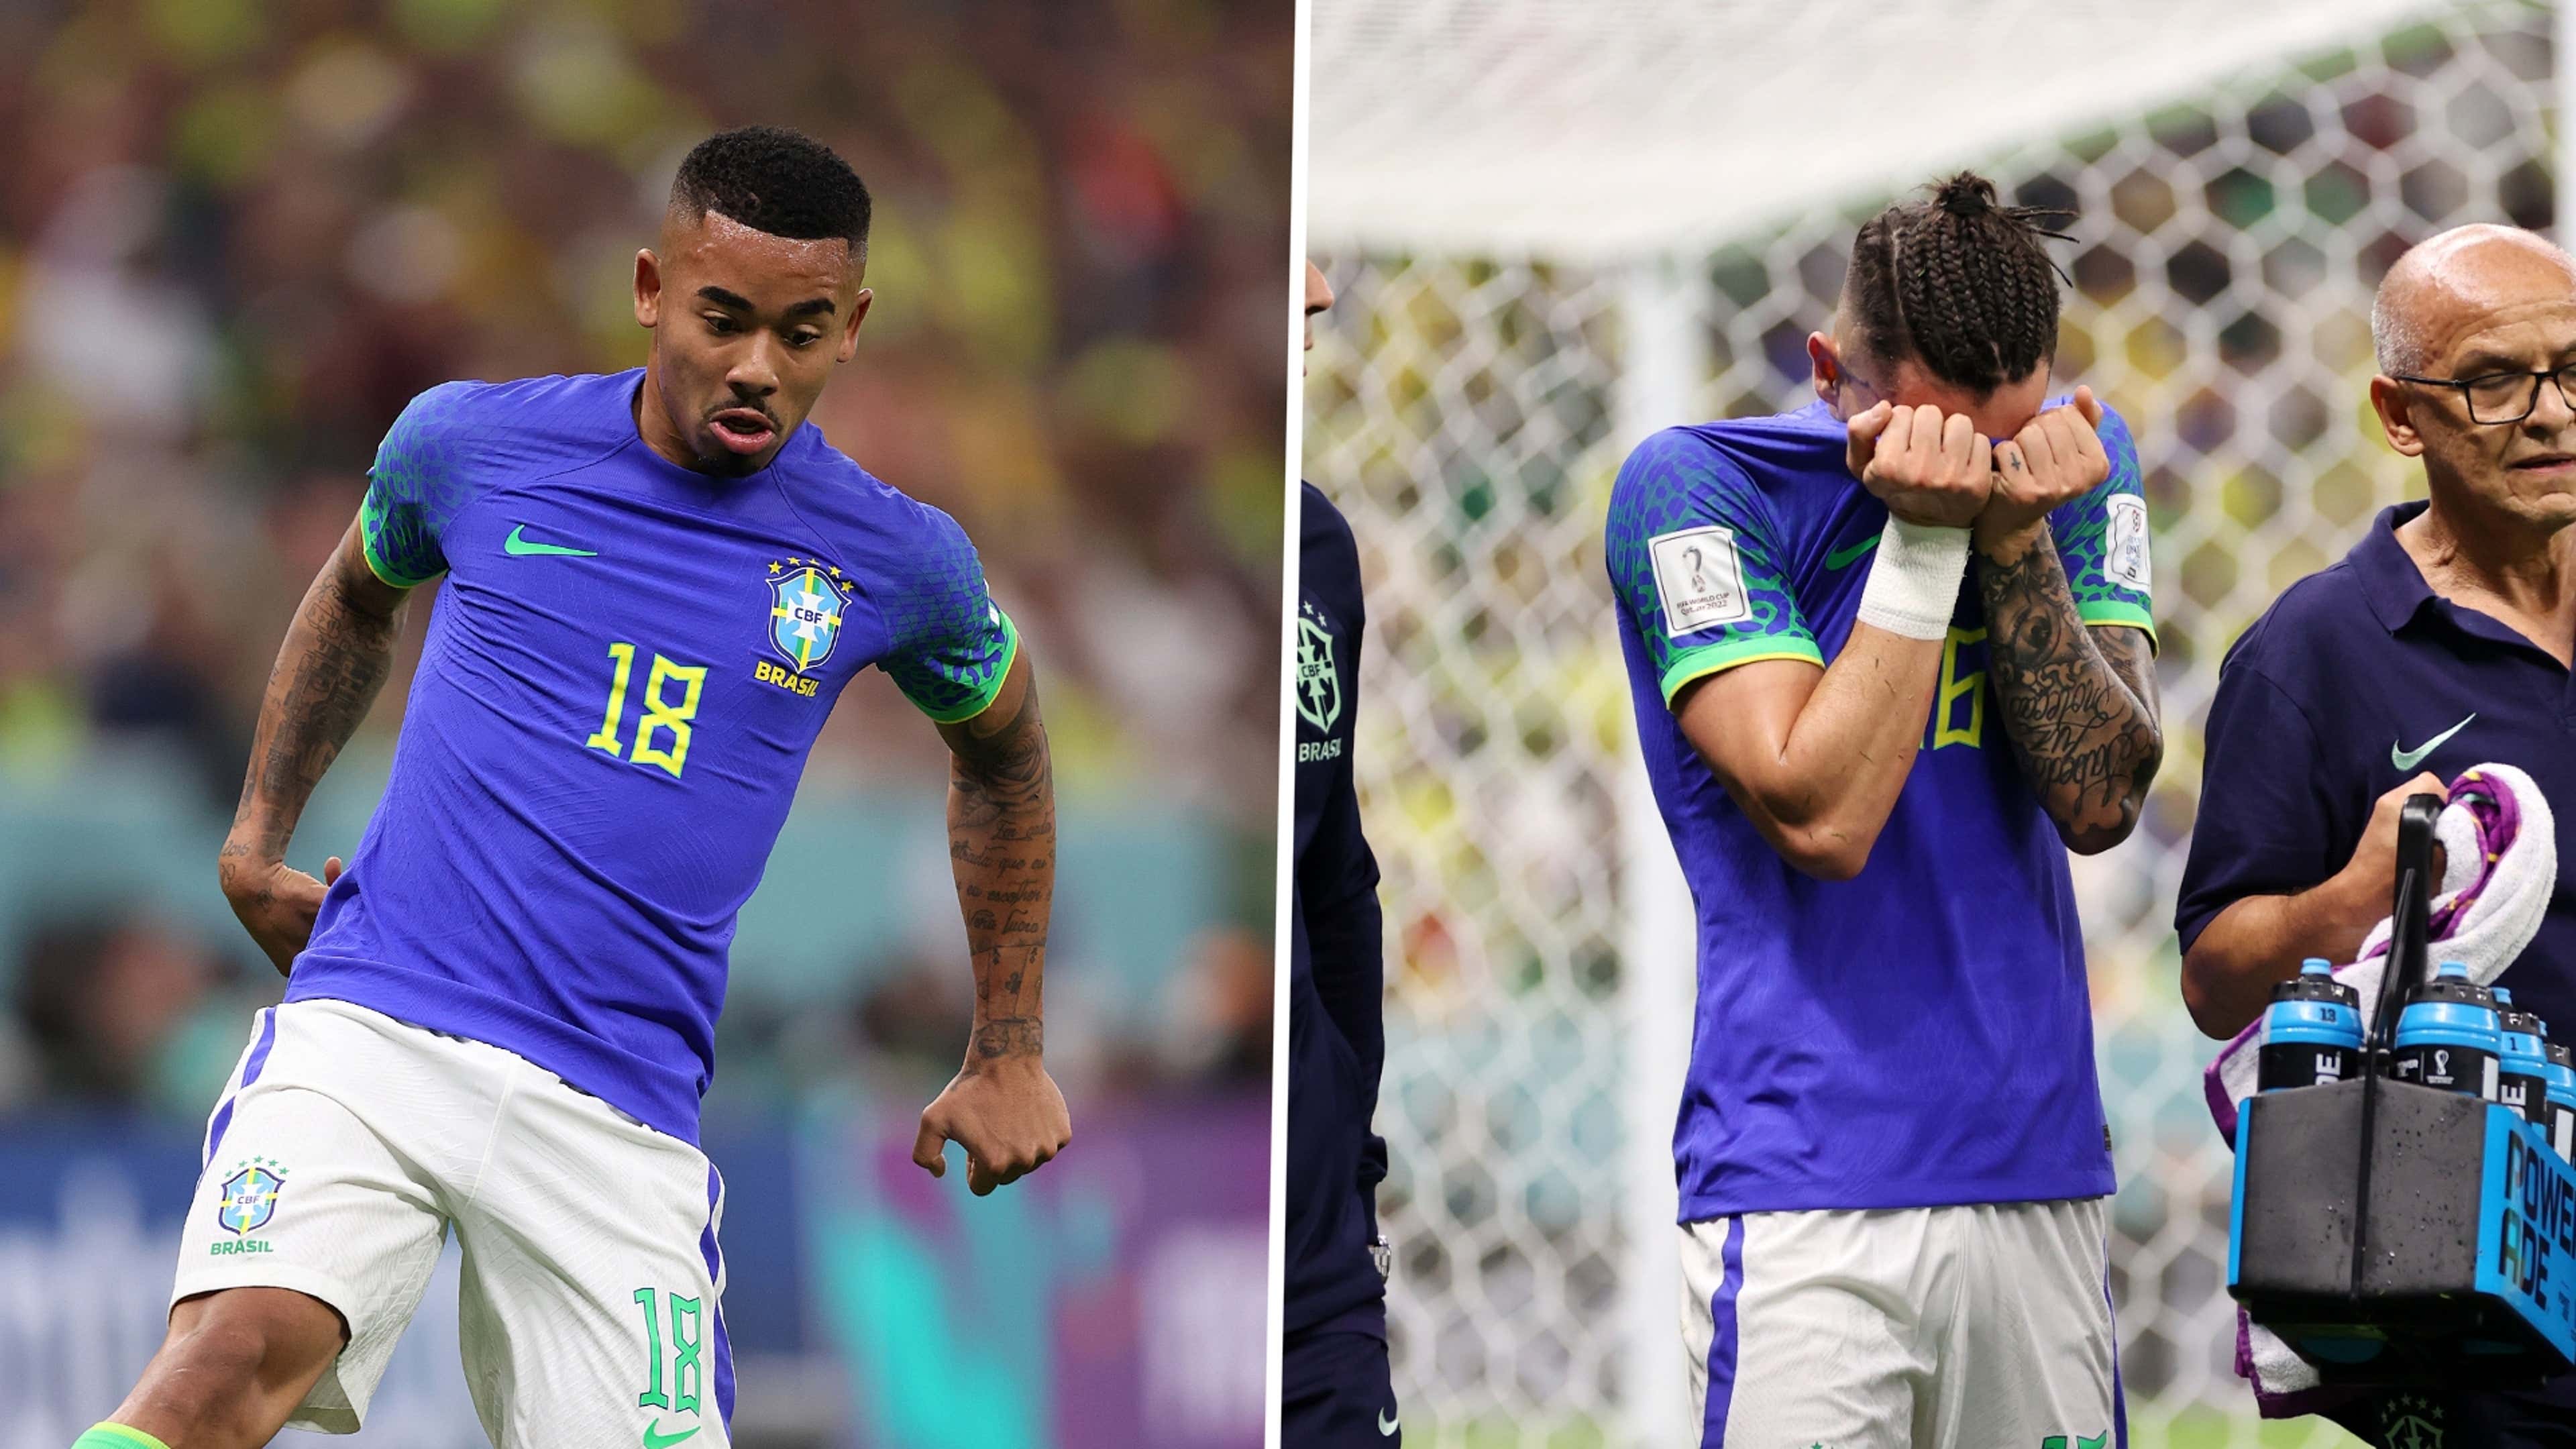 Brasil está fora da Copa do Mundo 2022 - Seleção perde, nos